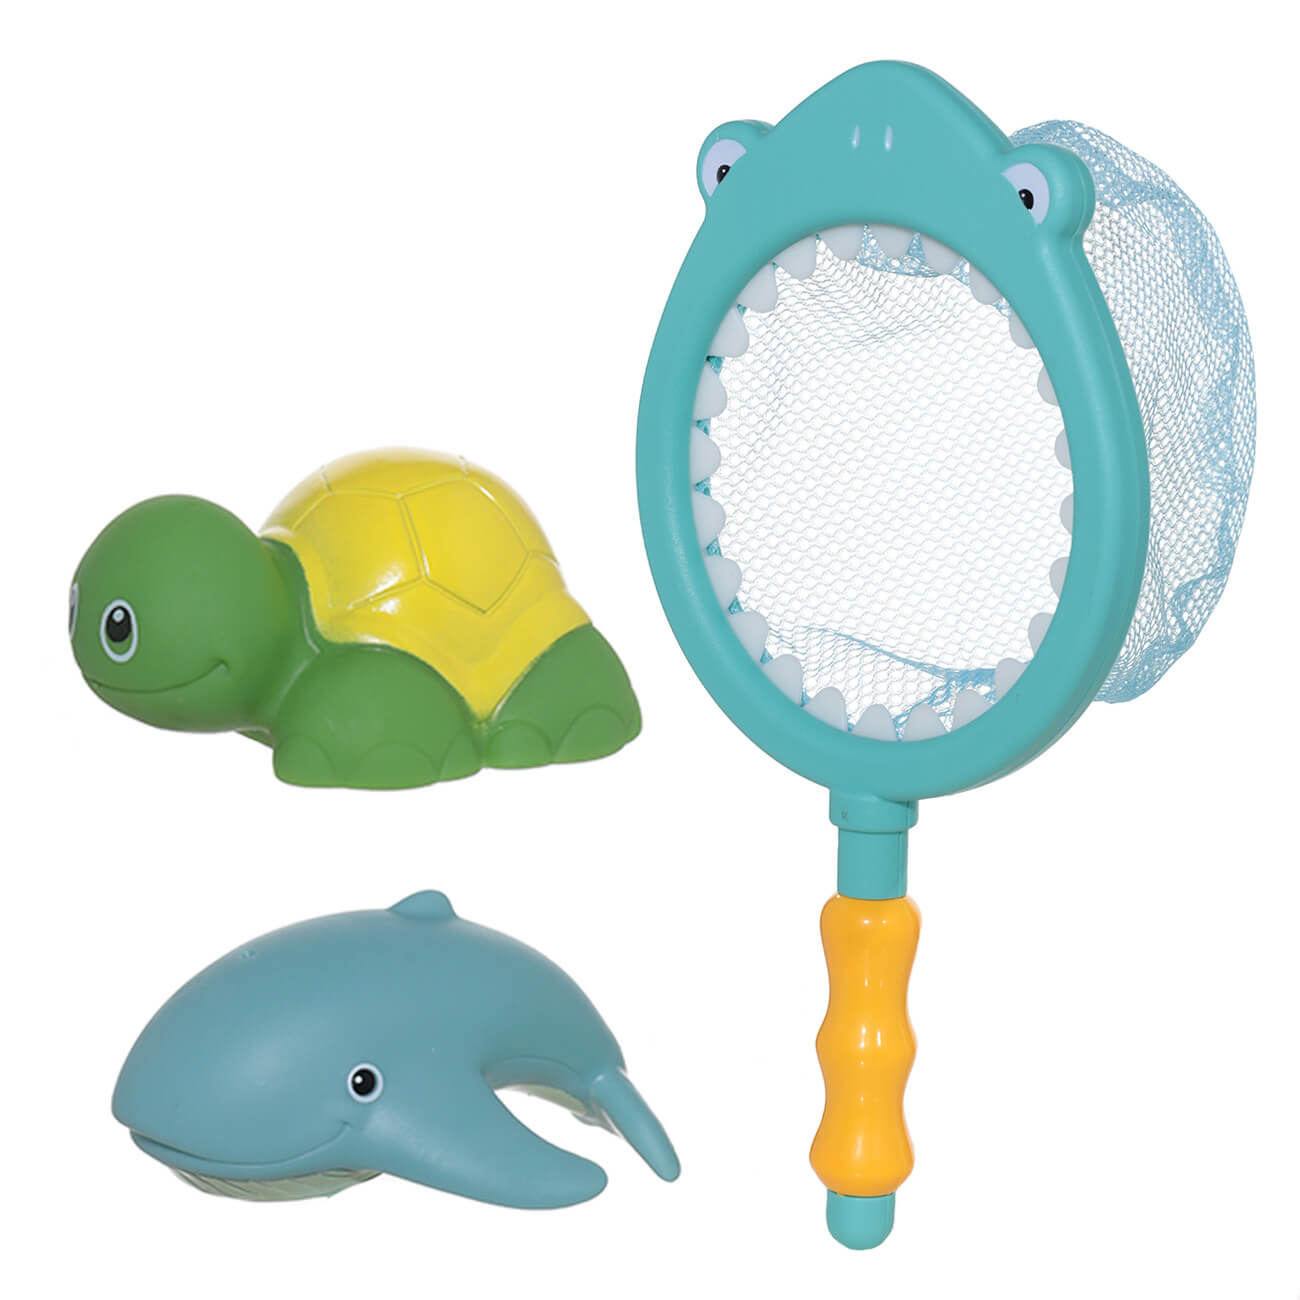 Набор игрушек для купания, 3 пр, сачок/игрушки, резина/пластик, Акула, Aquatic animals очки для игрушек набор 4 шт размер 1 шт 2 5 × 7 × 5 3 см